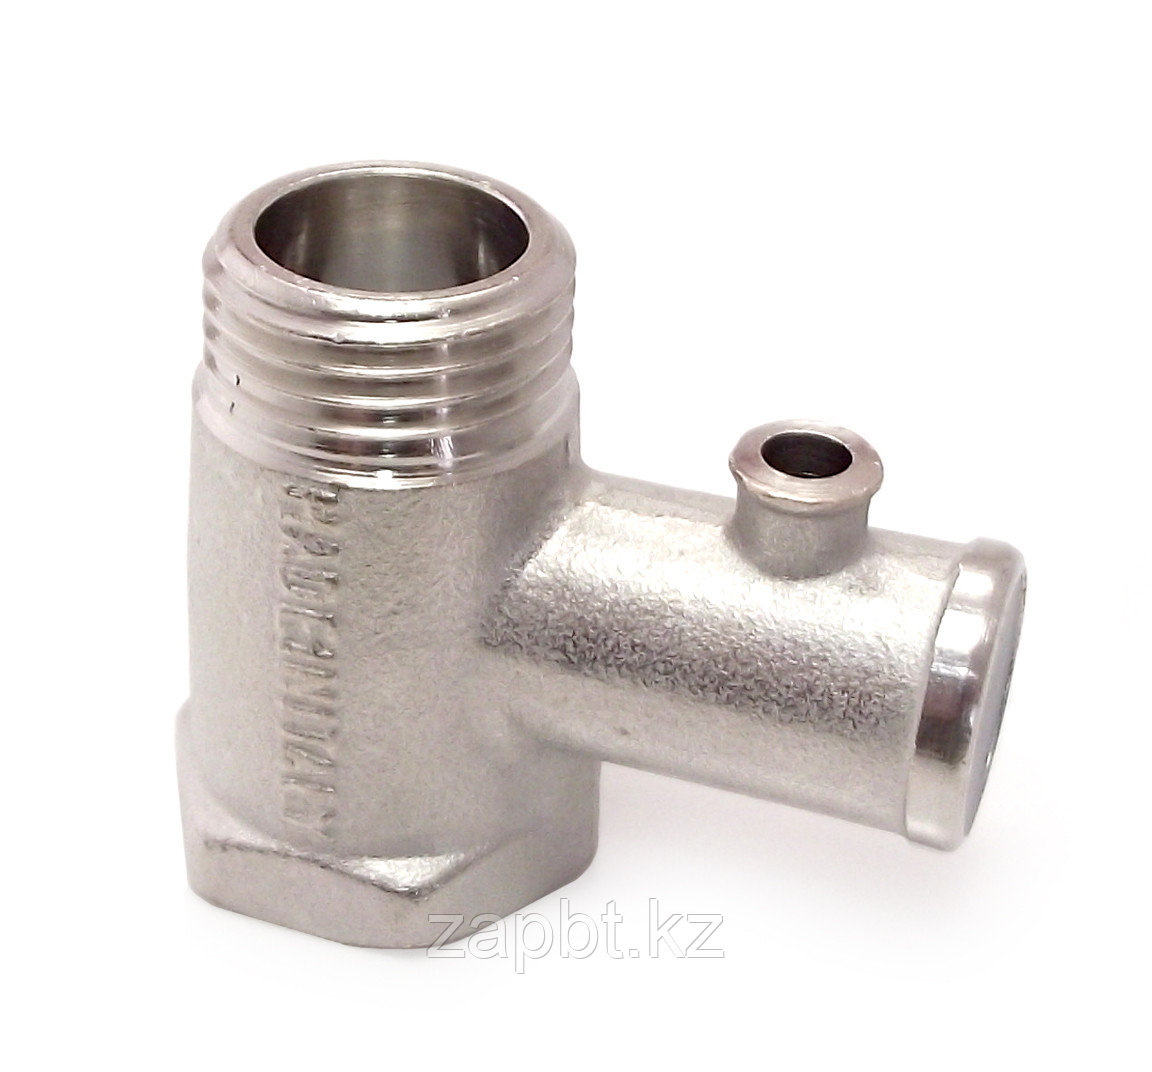 Клапан предохранительный для бойлера (водонагревателя) обратный 1/2 8,5 bar без флажка